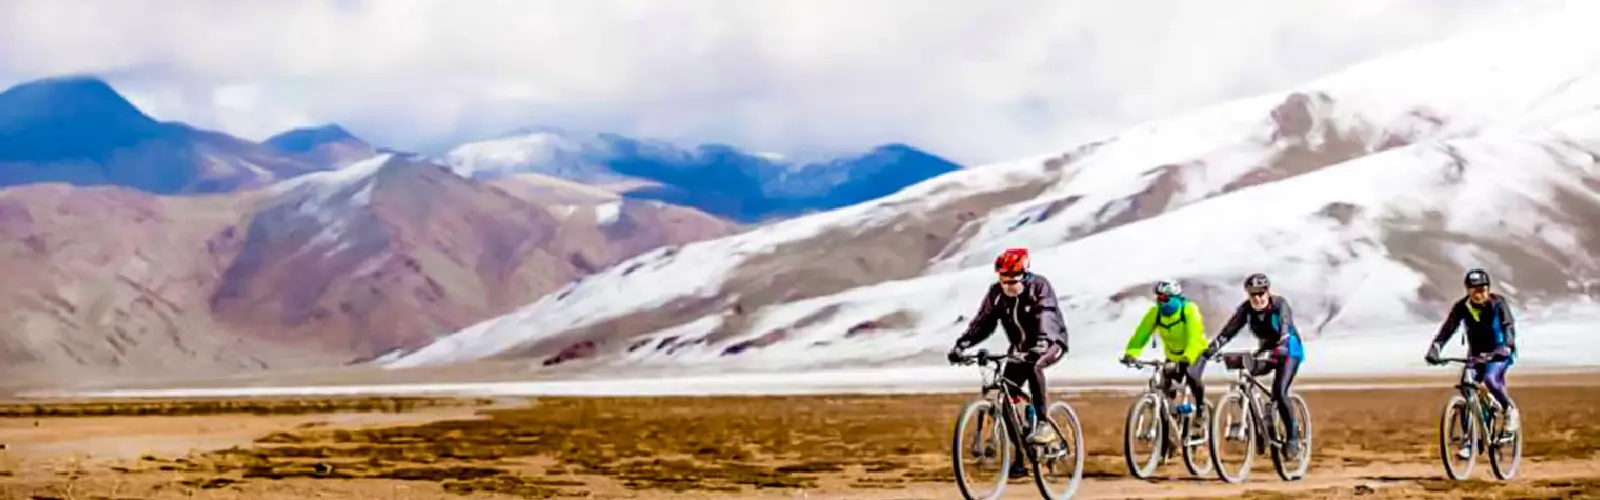 manali-leh-mountain-biking